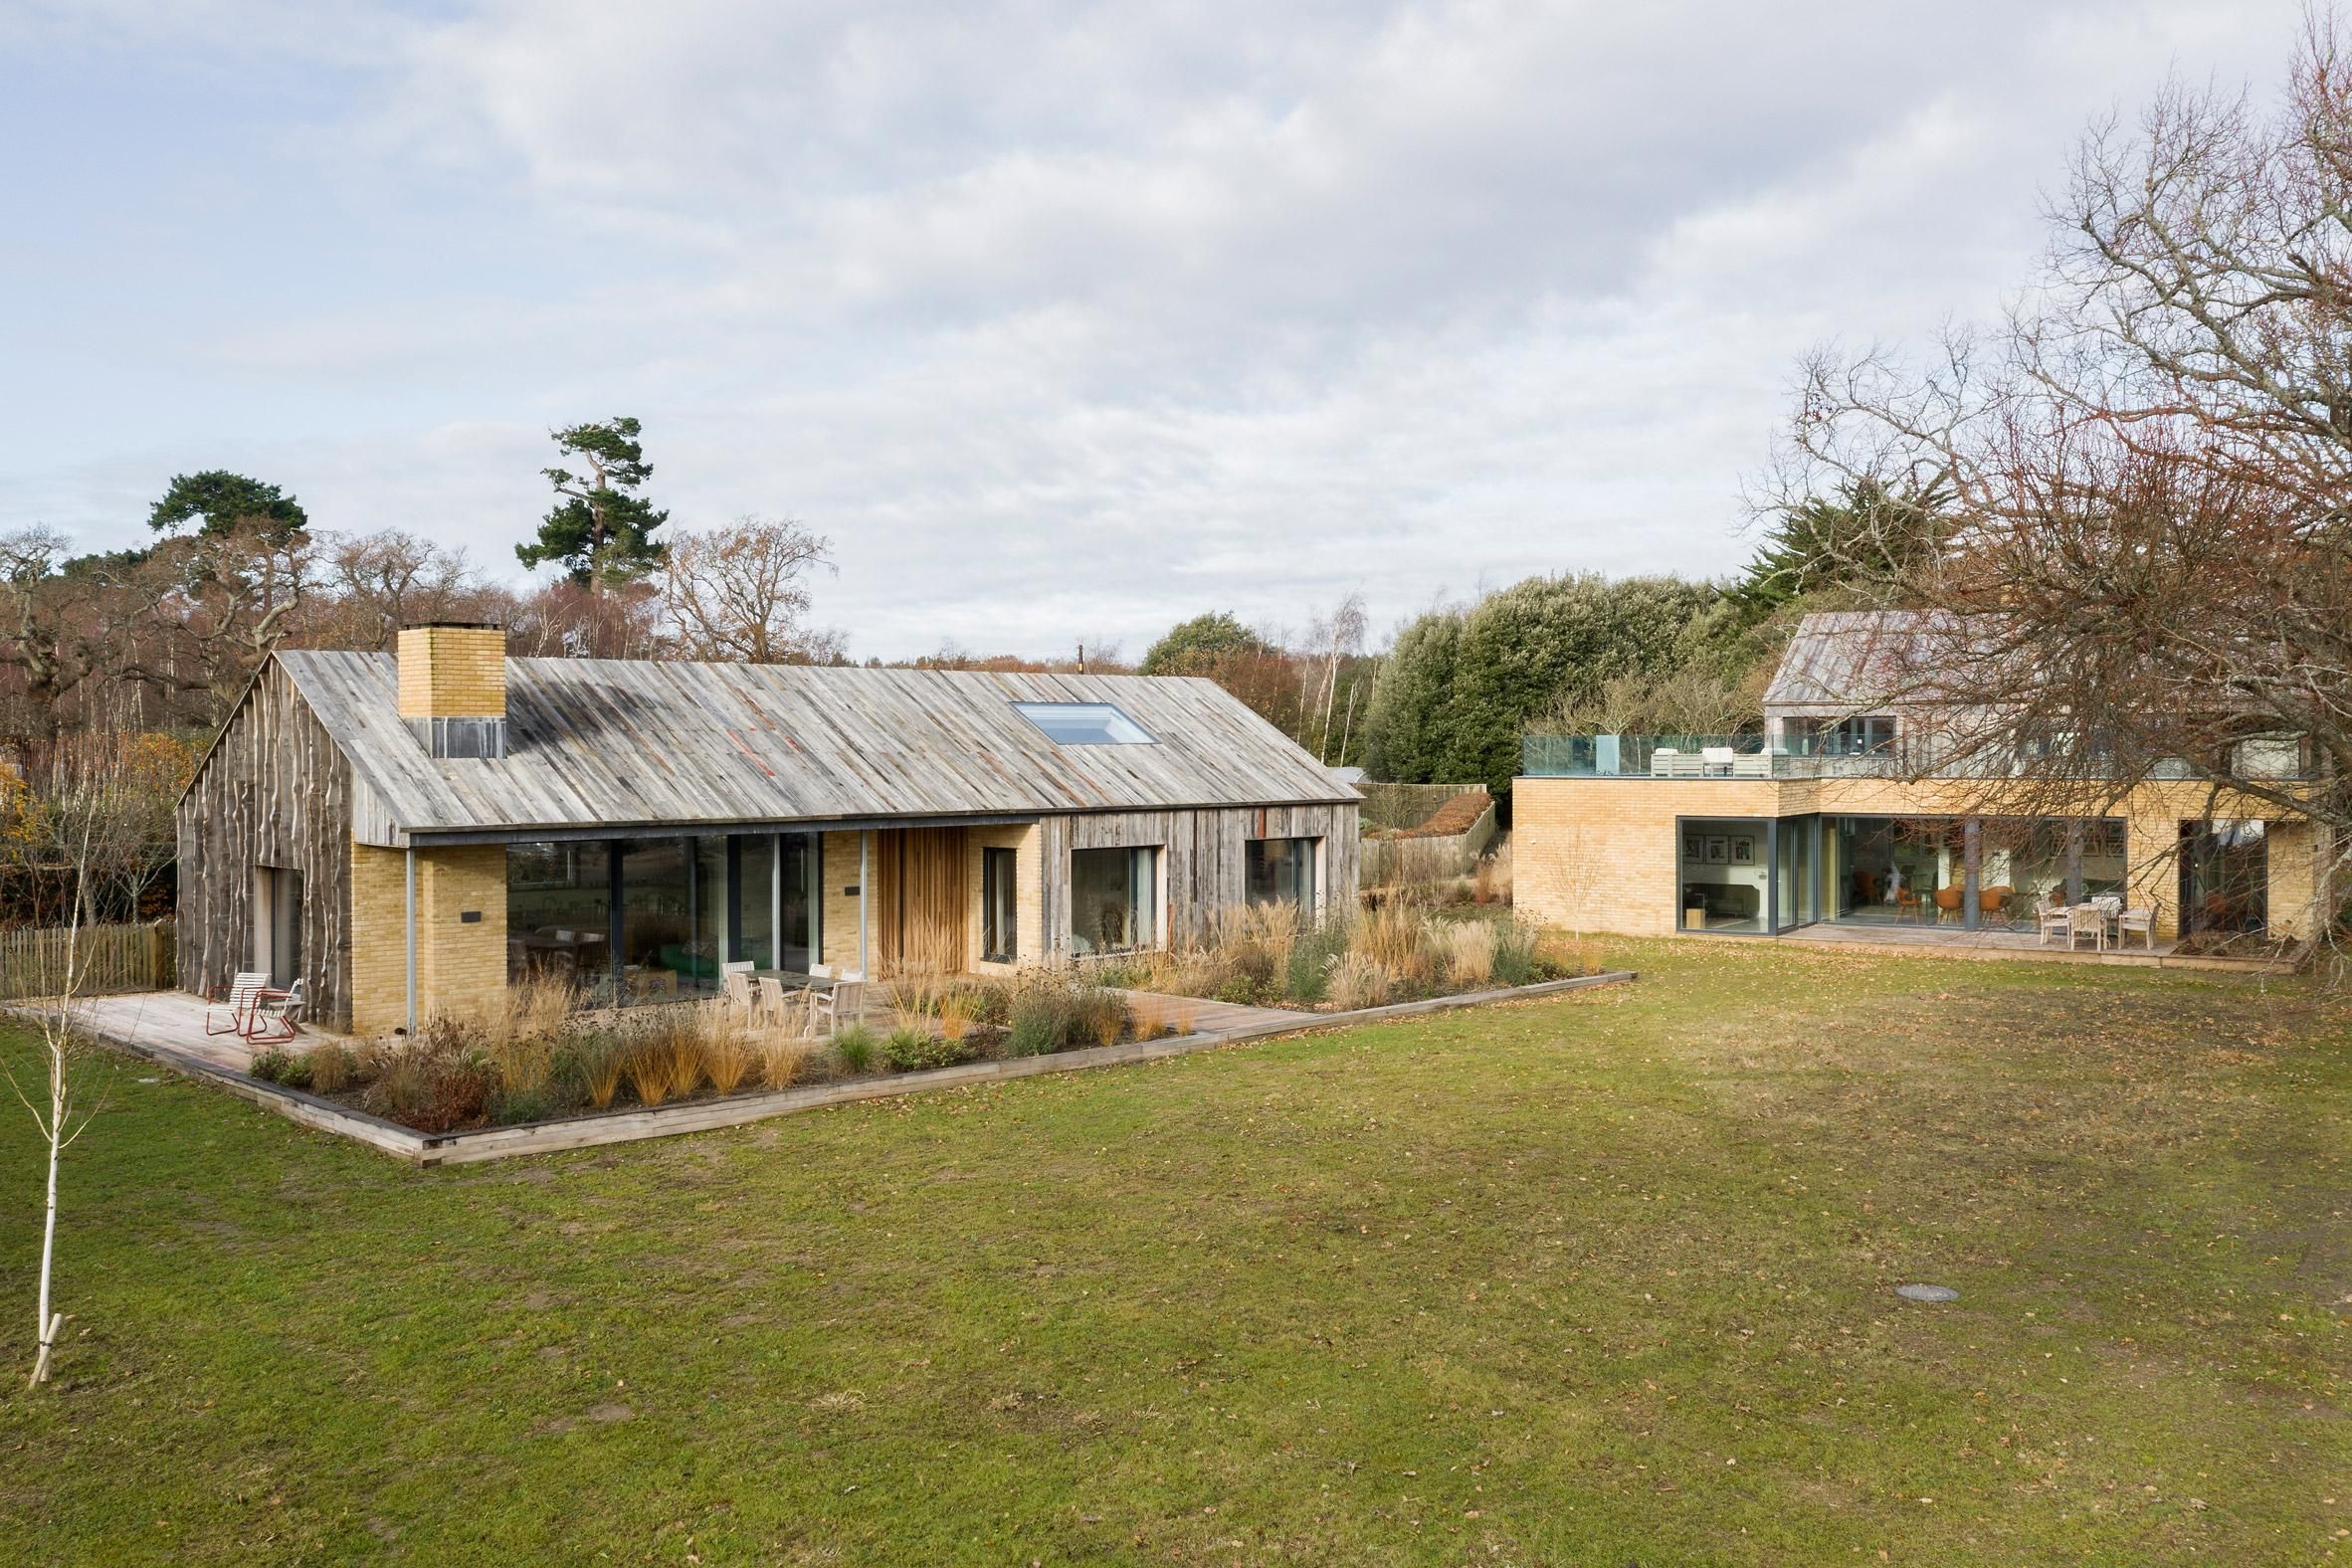 Хатинка Грута: особливості екологічного будинку із вторсировини у Англії – фото